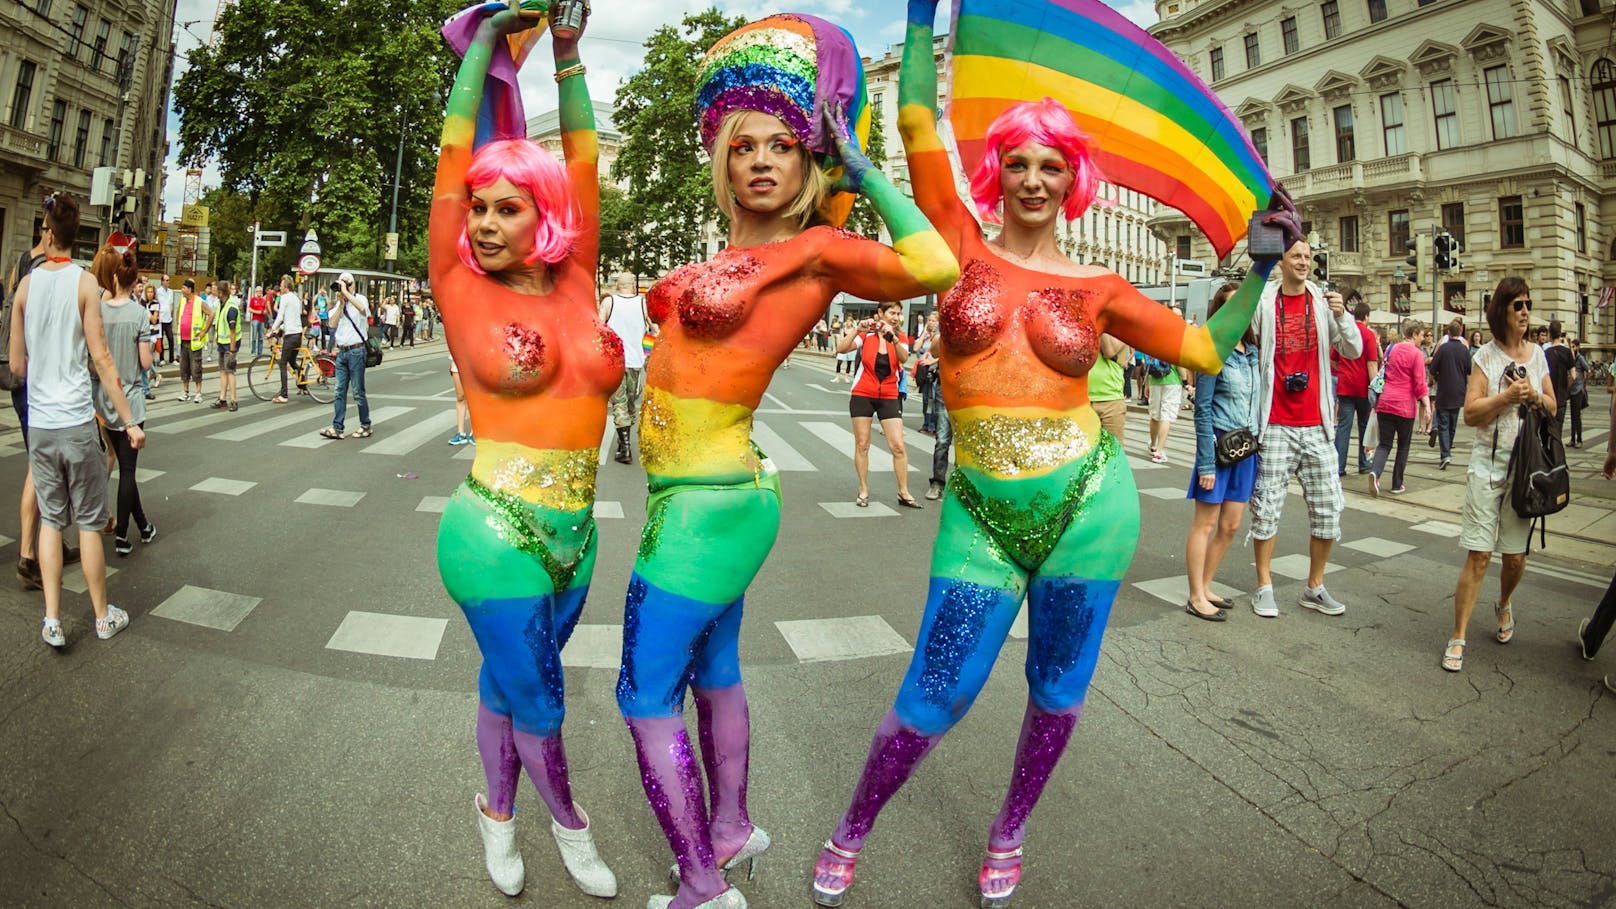 Reisewarnung! Angst vor Attacken auf Pride-Events